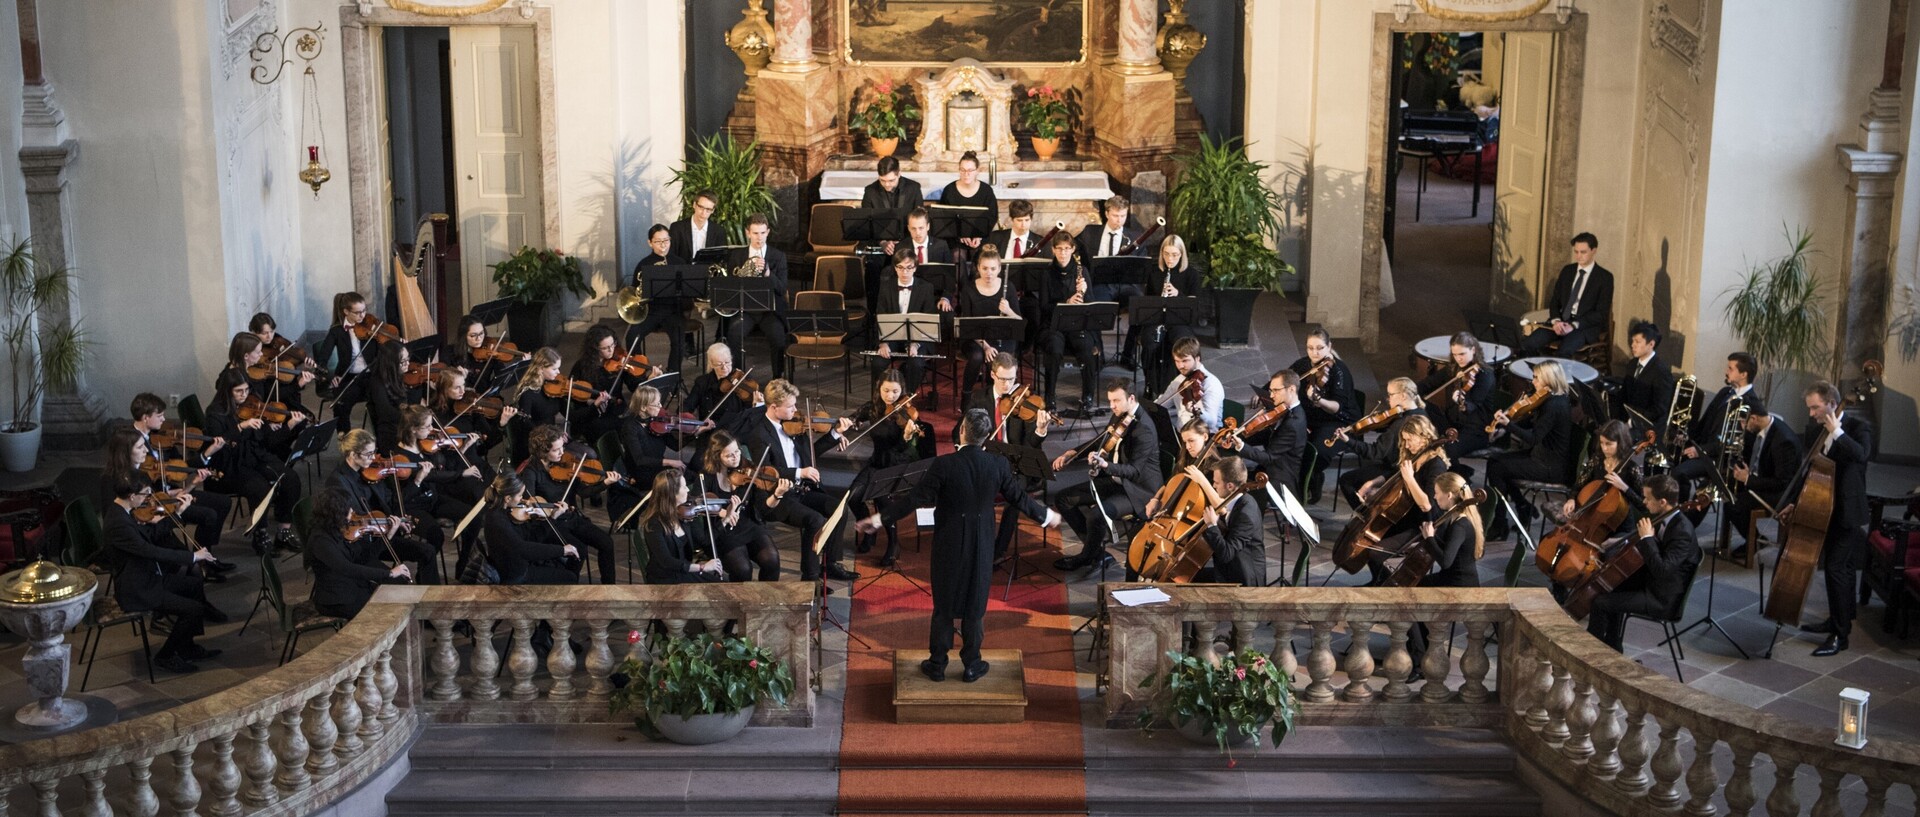 Ein Orchester spielt in einer Kirche.